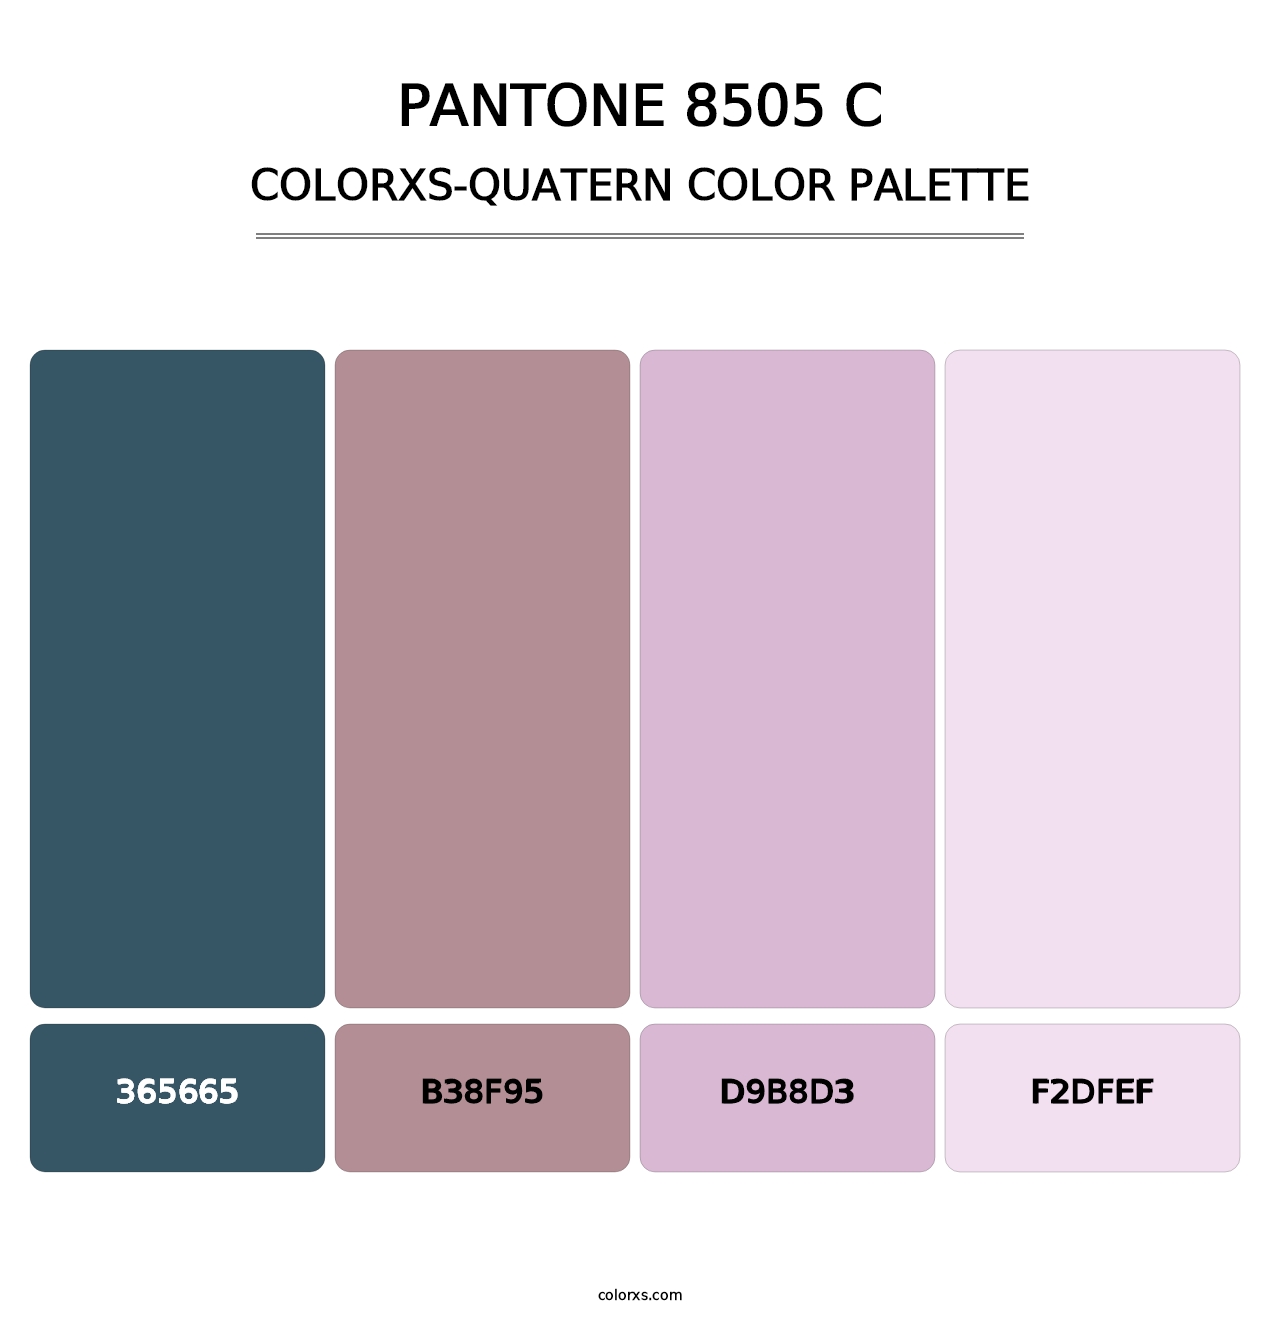 PANTONE 8505 C - Colorxs Quatern Palette